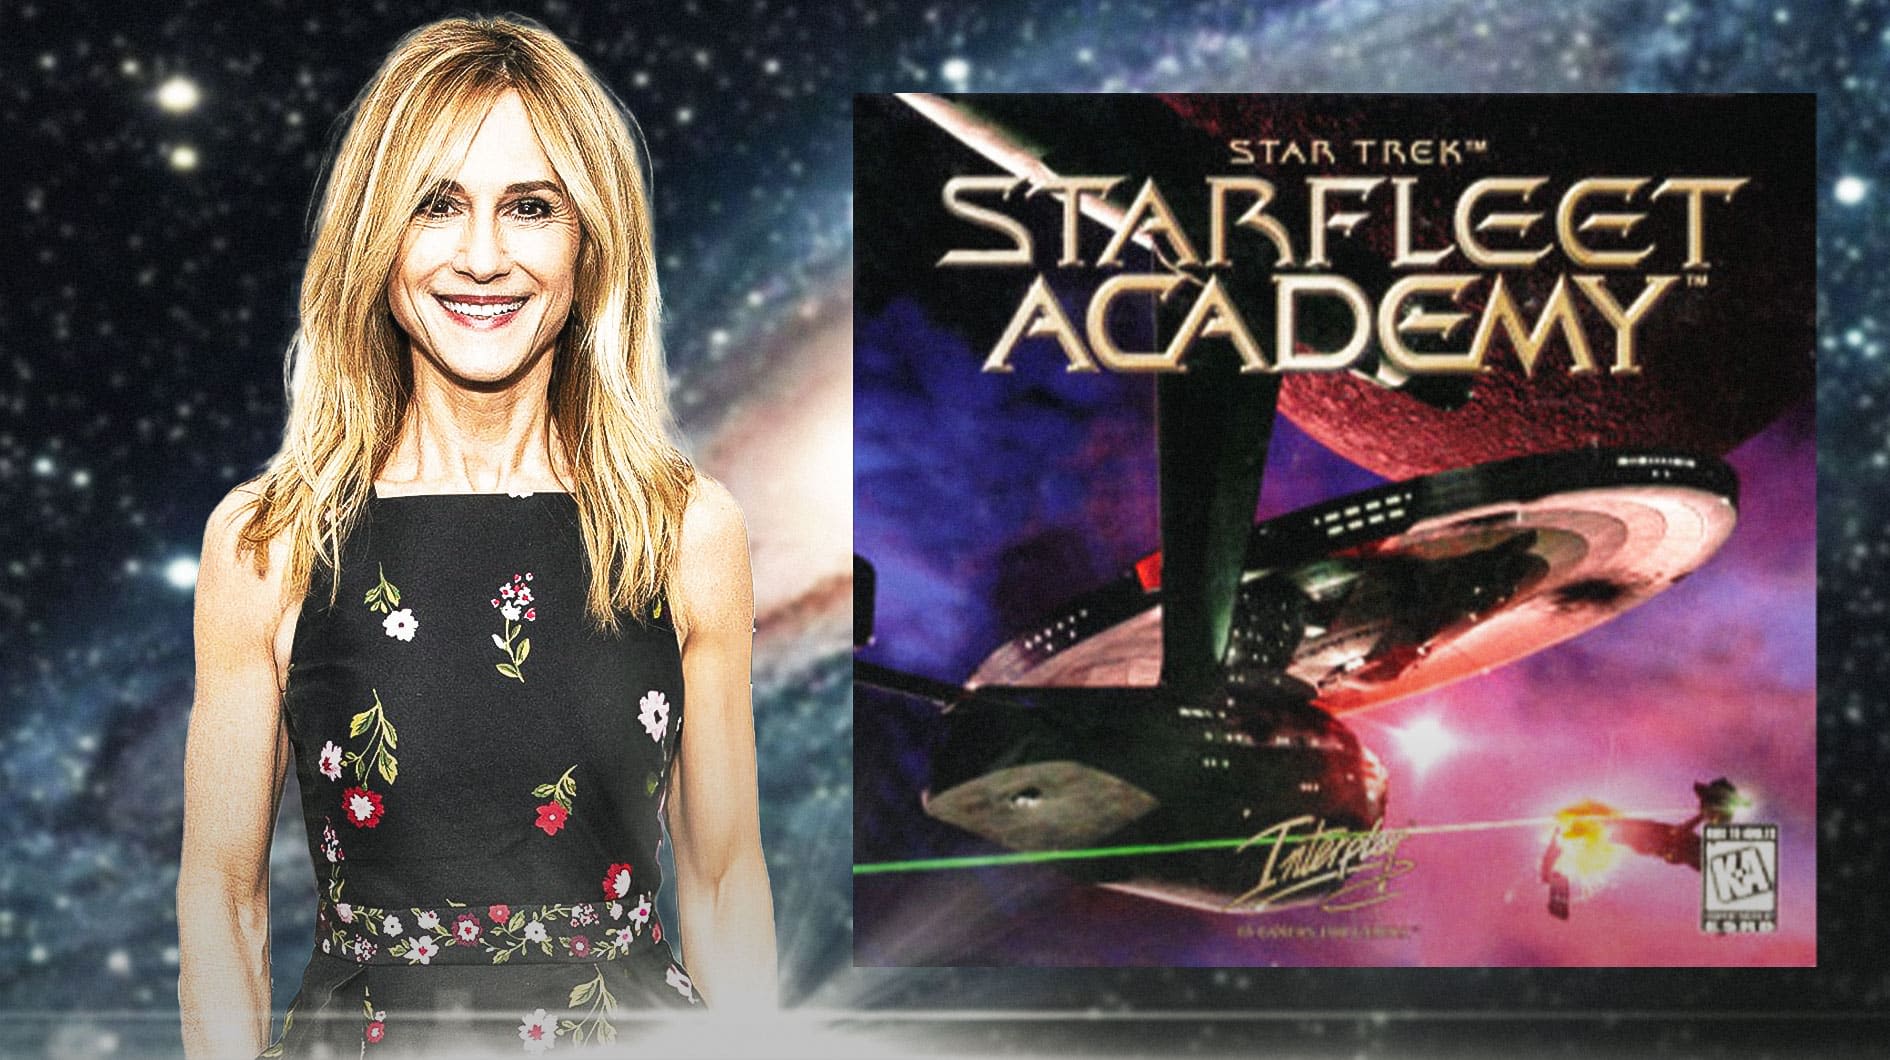 Star Trek: Starfleet Academy finds its Chancellor in Holly Hunter